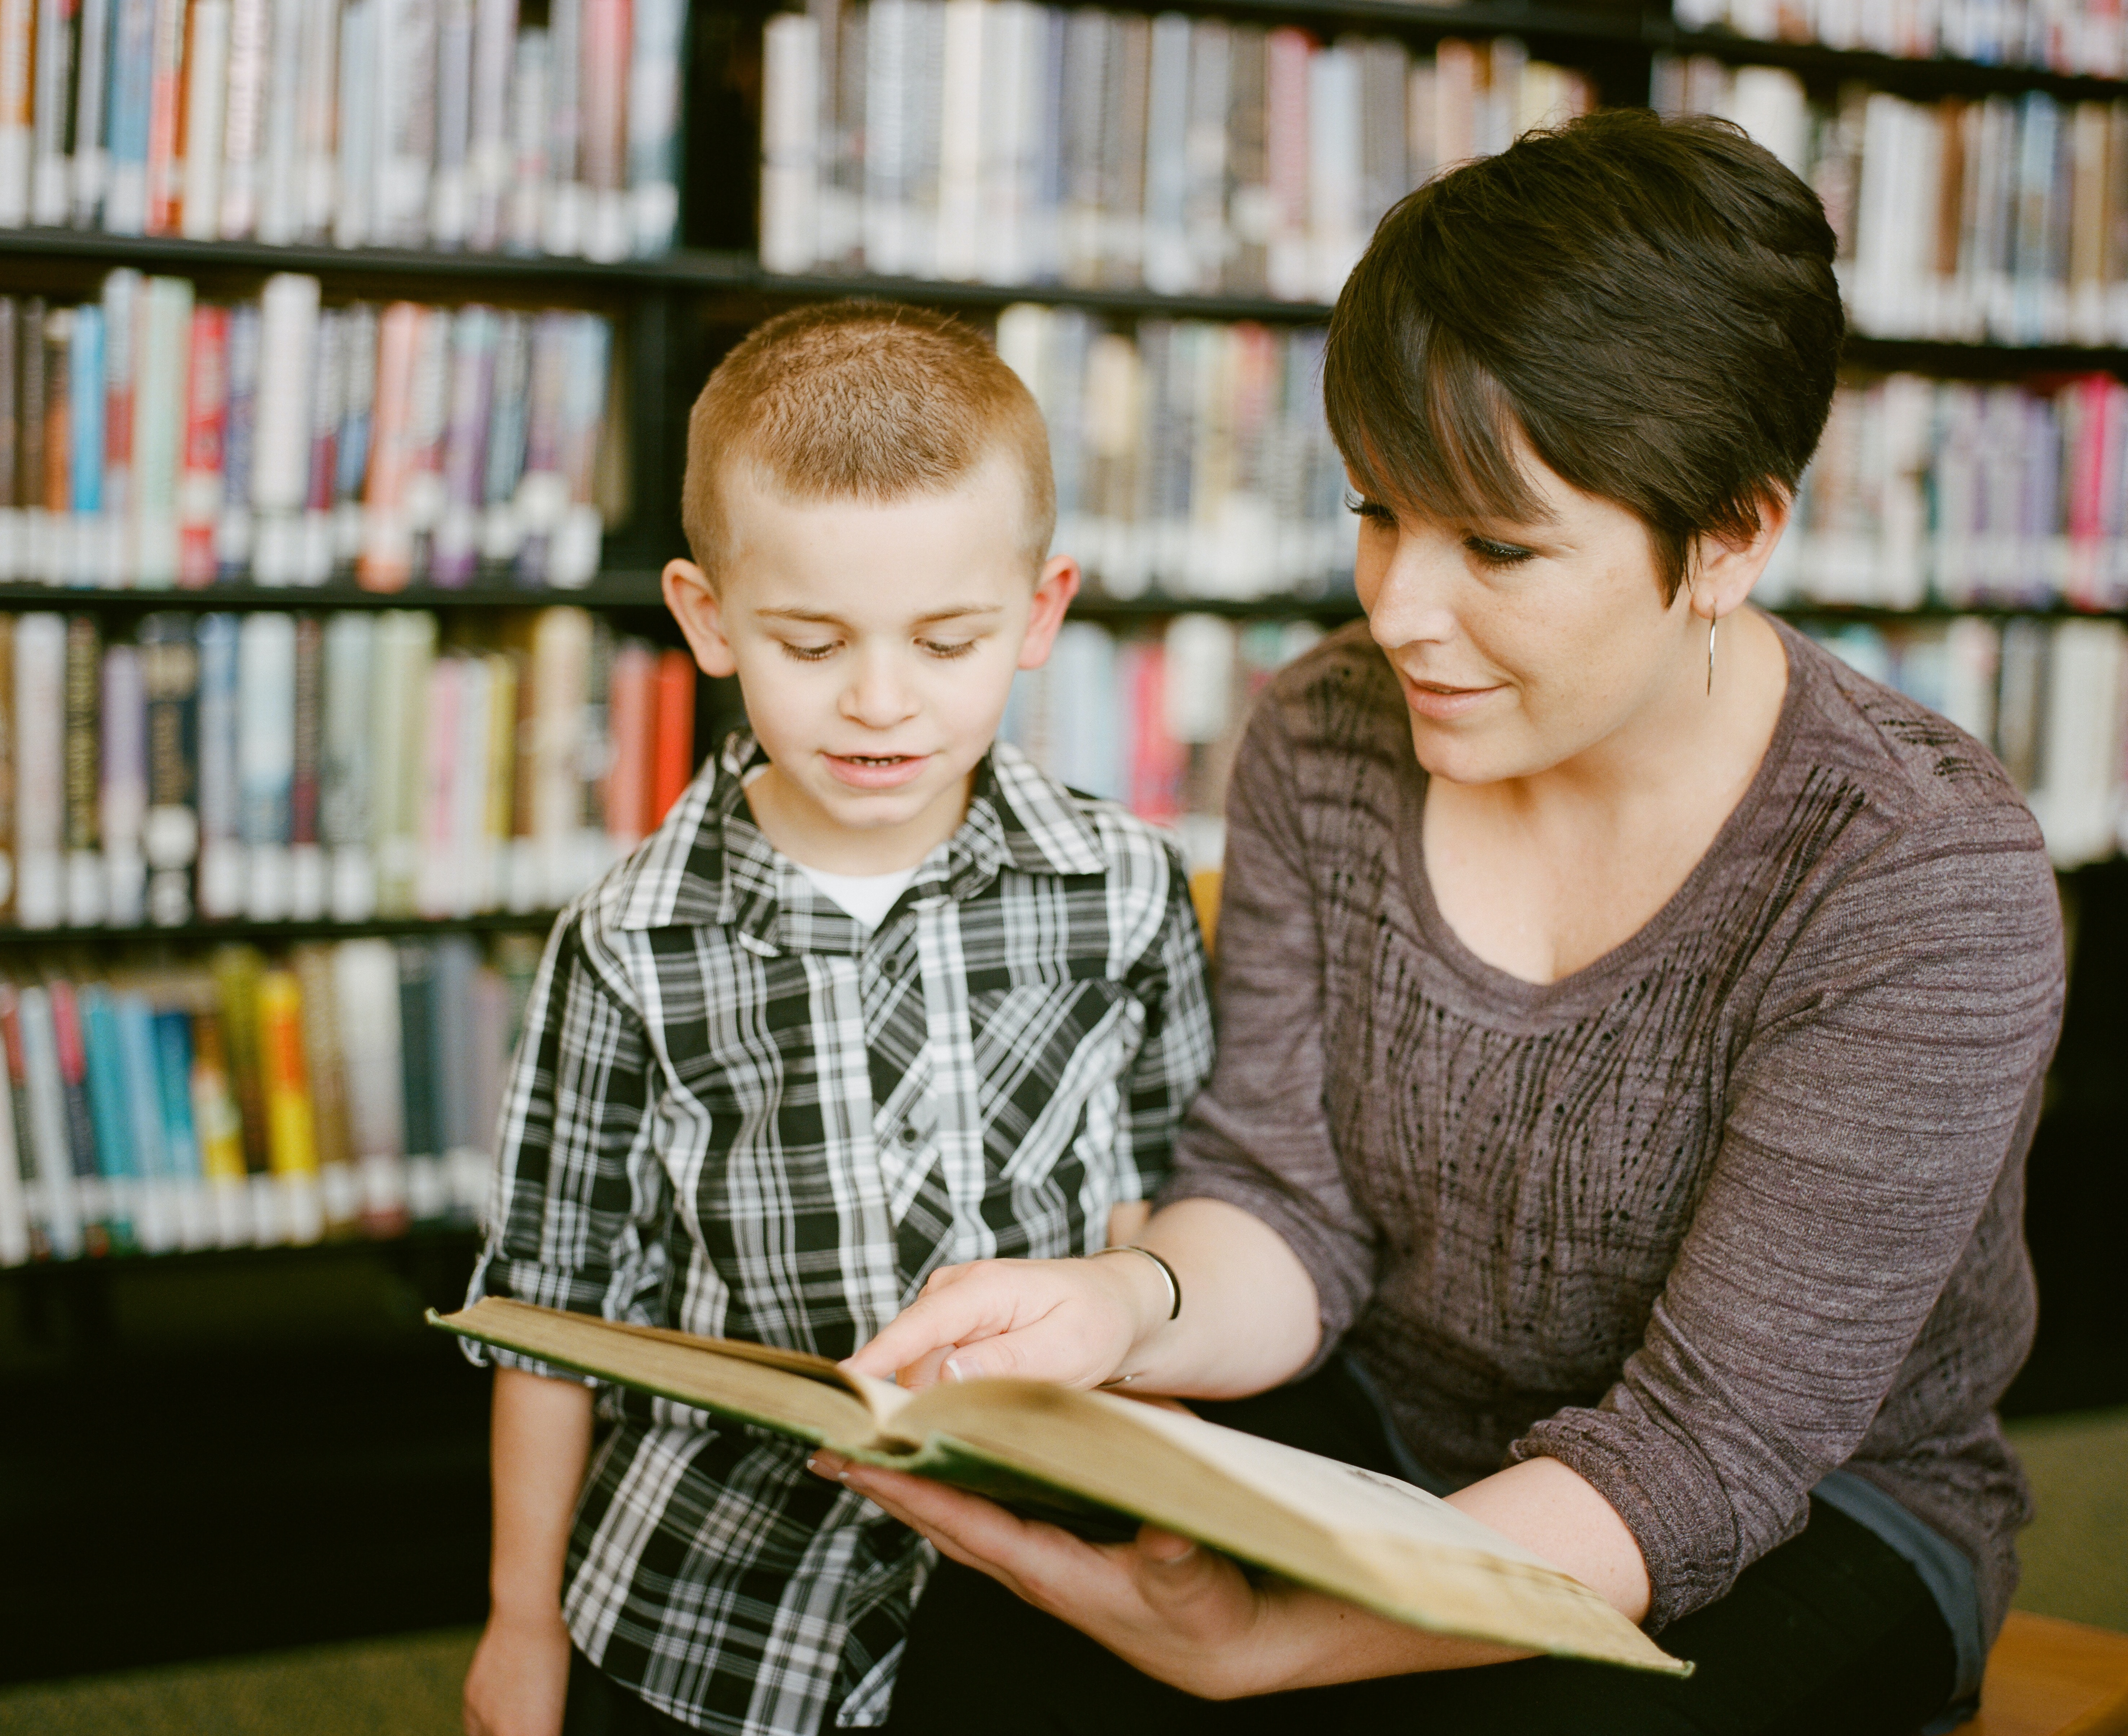 Foto: Ein Kind und eine Frau schauen gemeinsam in ein Buch.